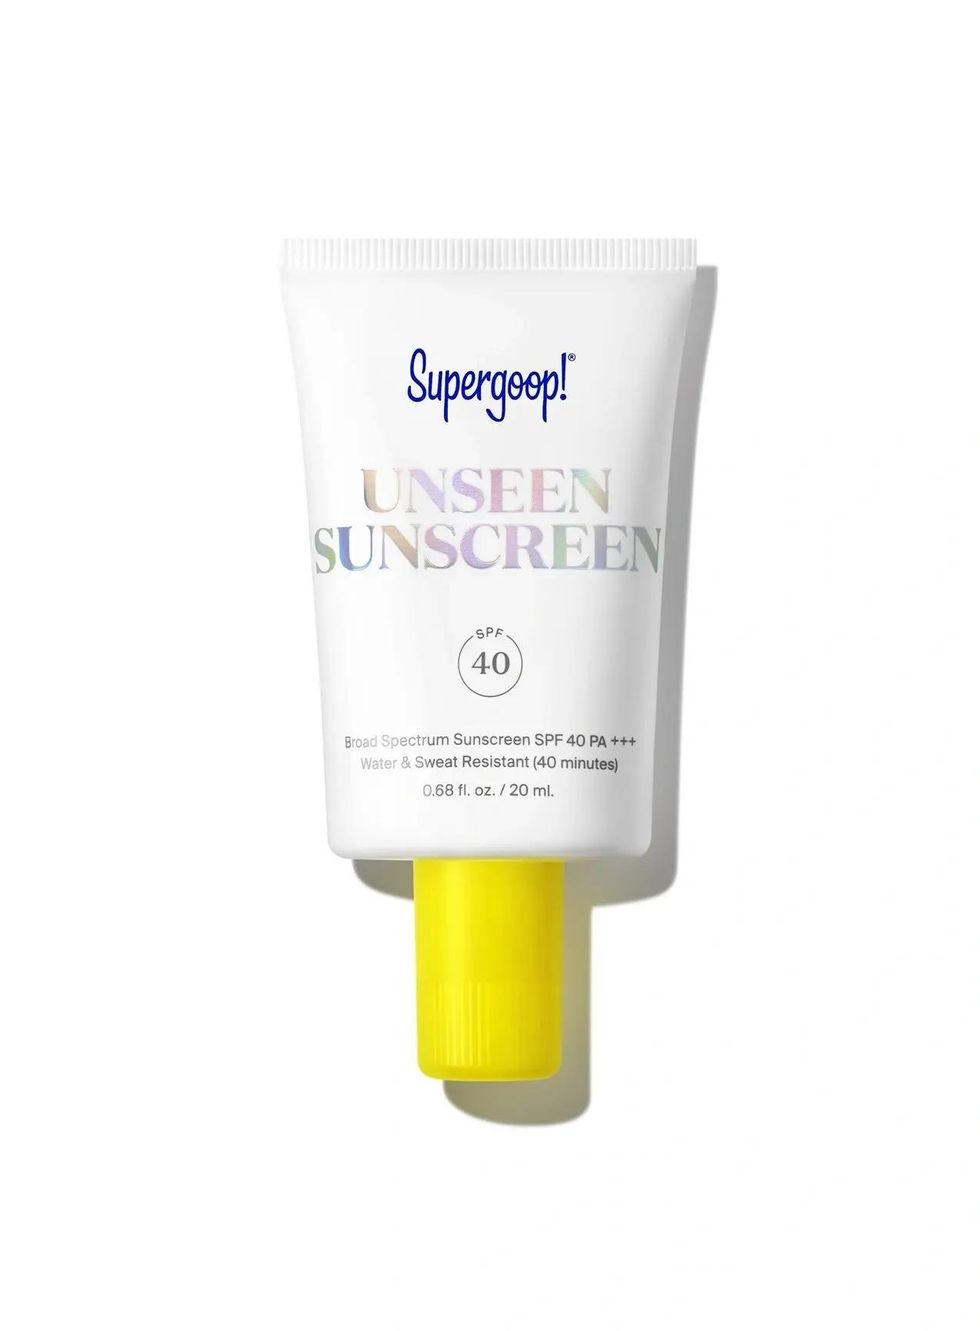 The best travel-size sunscreen: Supergoop! Unseen Sunscreen SPF 40